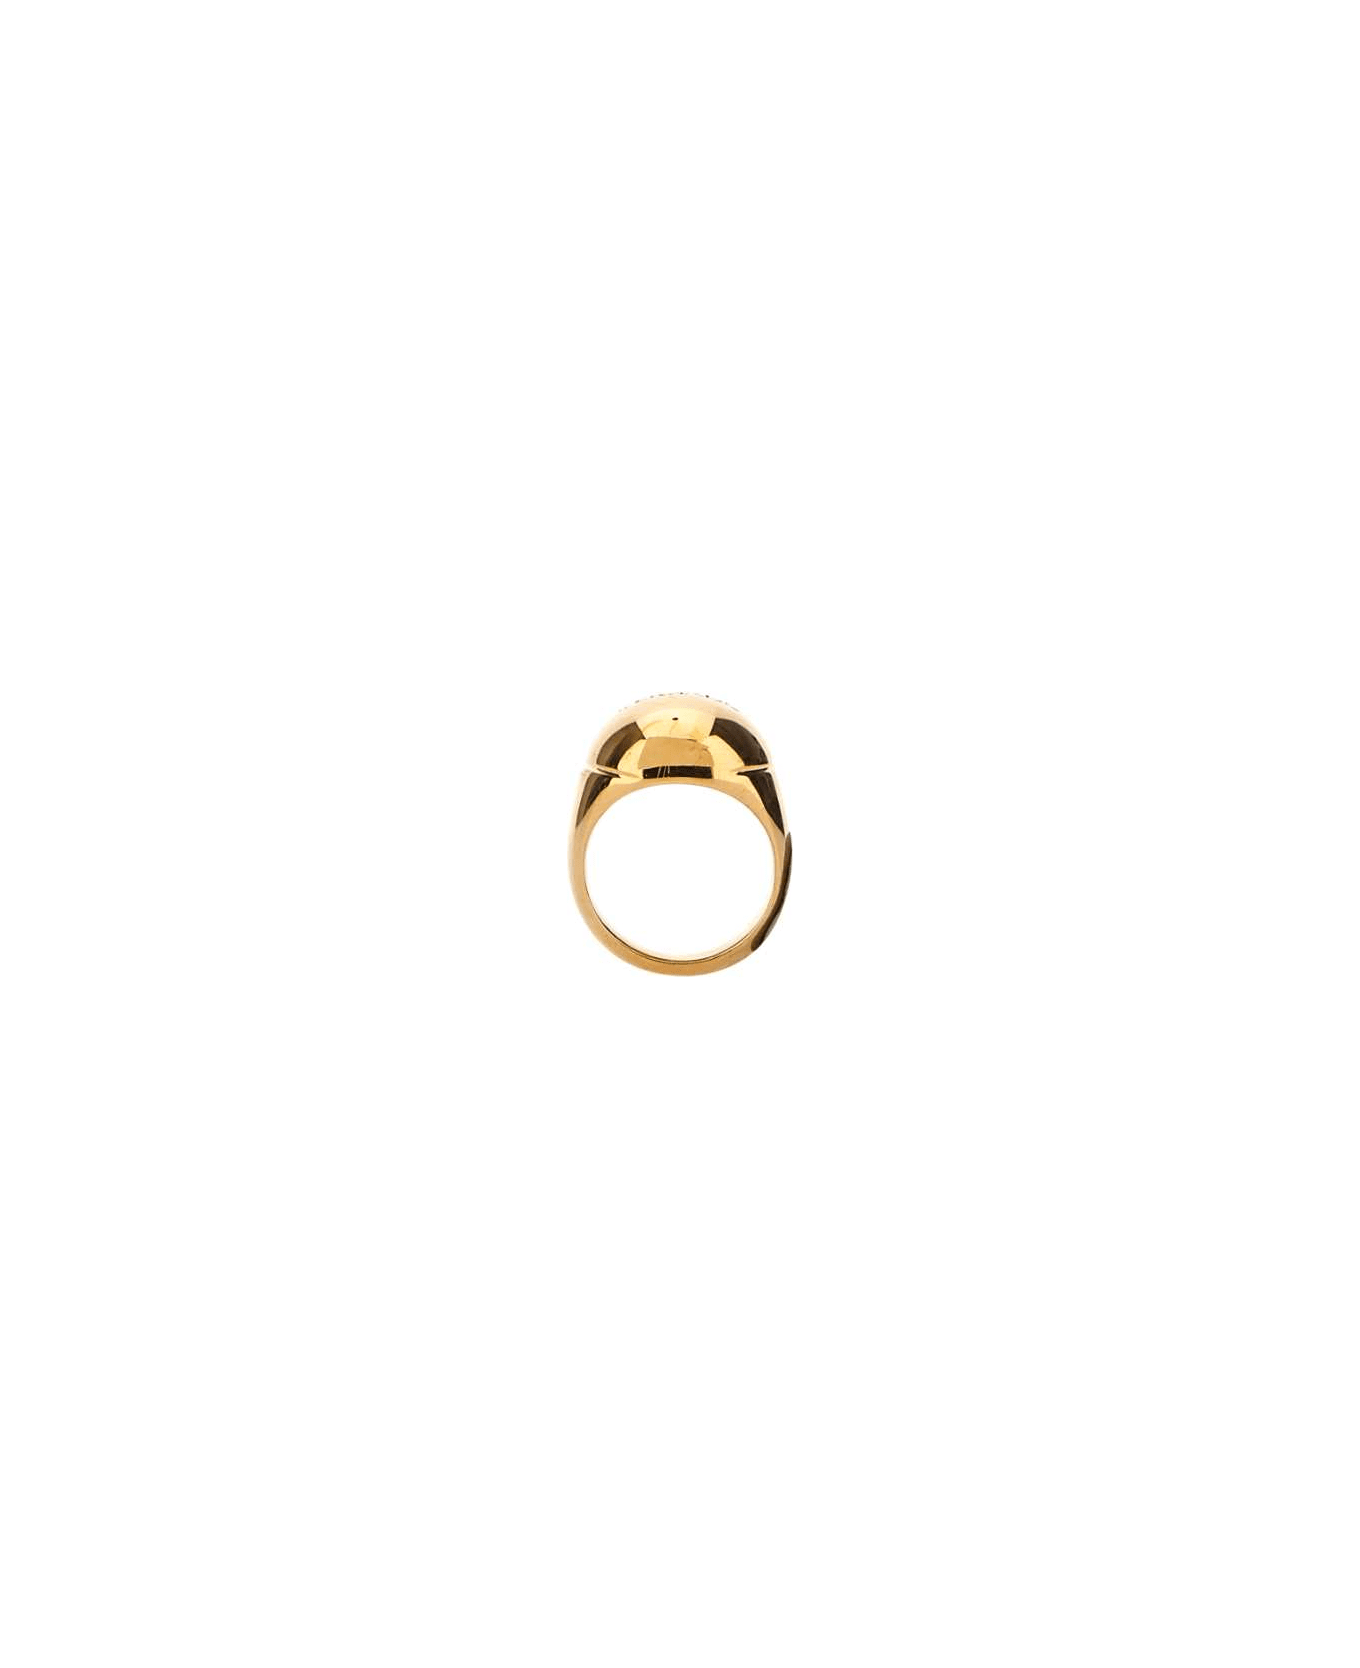 Versace Golden Metal Ring - 3J000